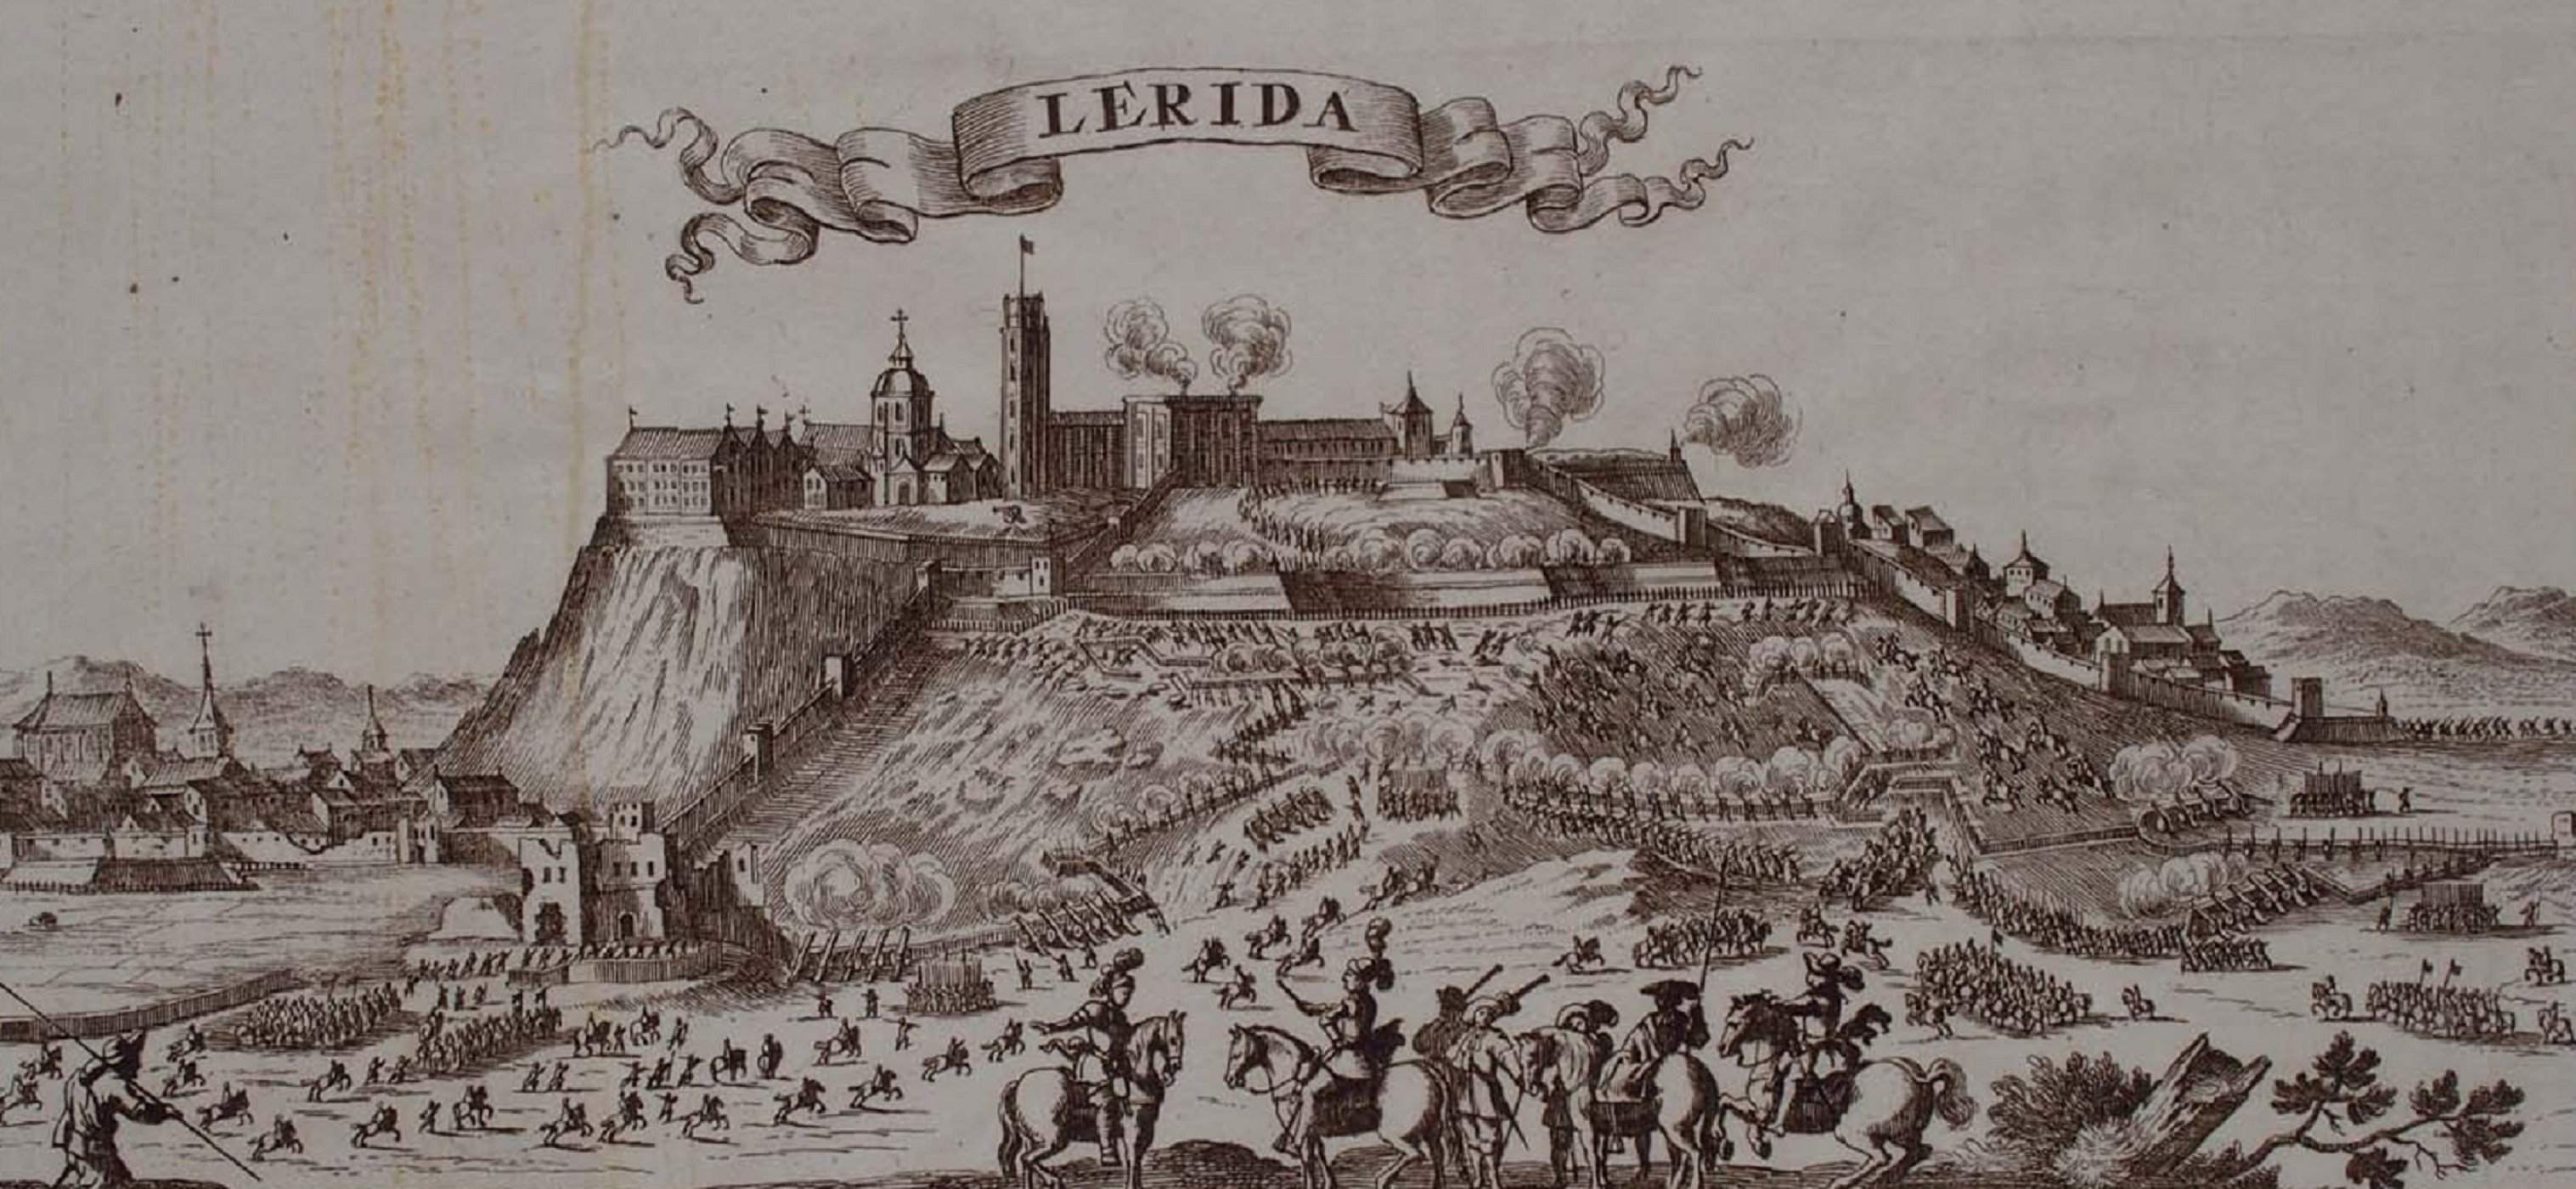 Els borbònics assalten Lleida i assassinen a sang freda un mínim de 700 civils